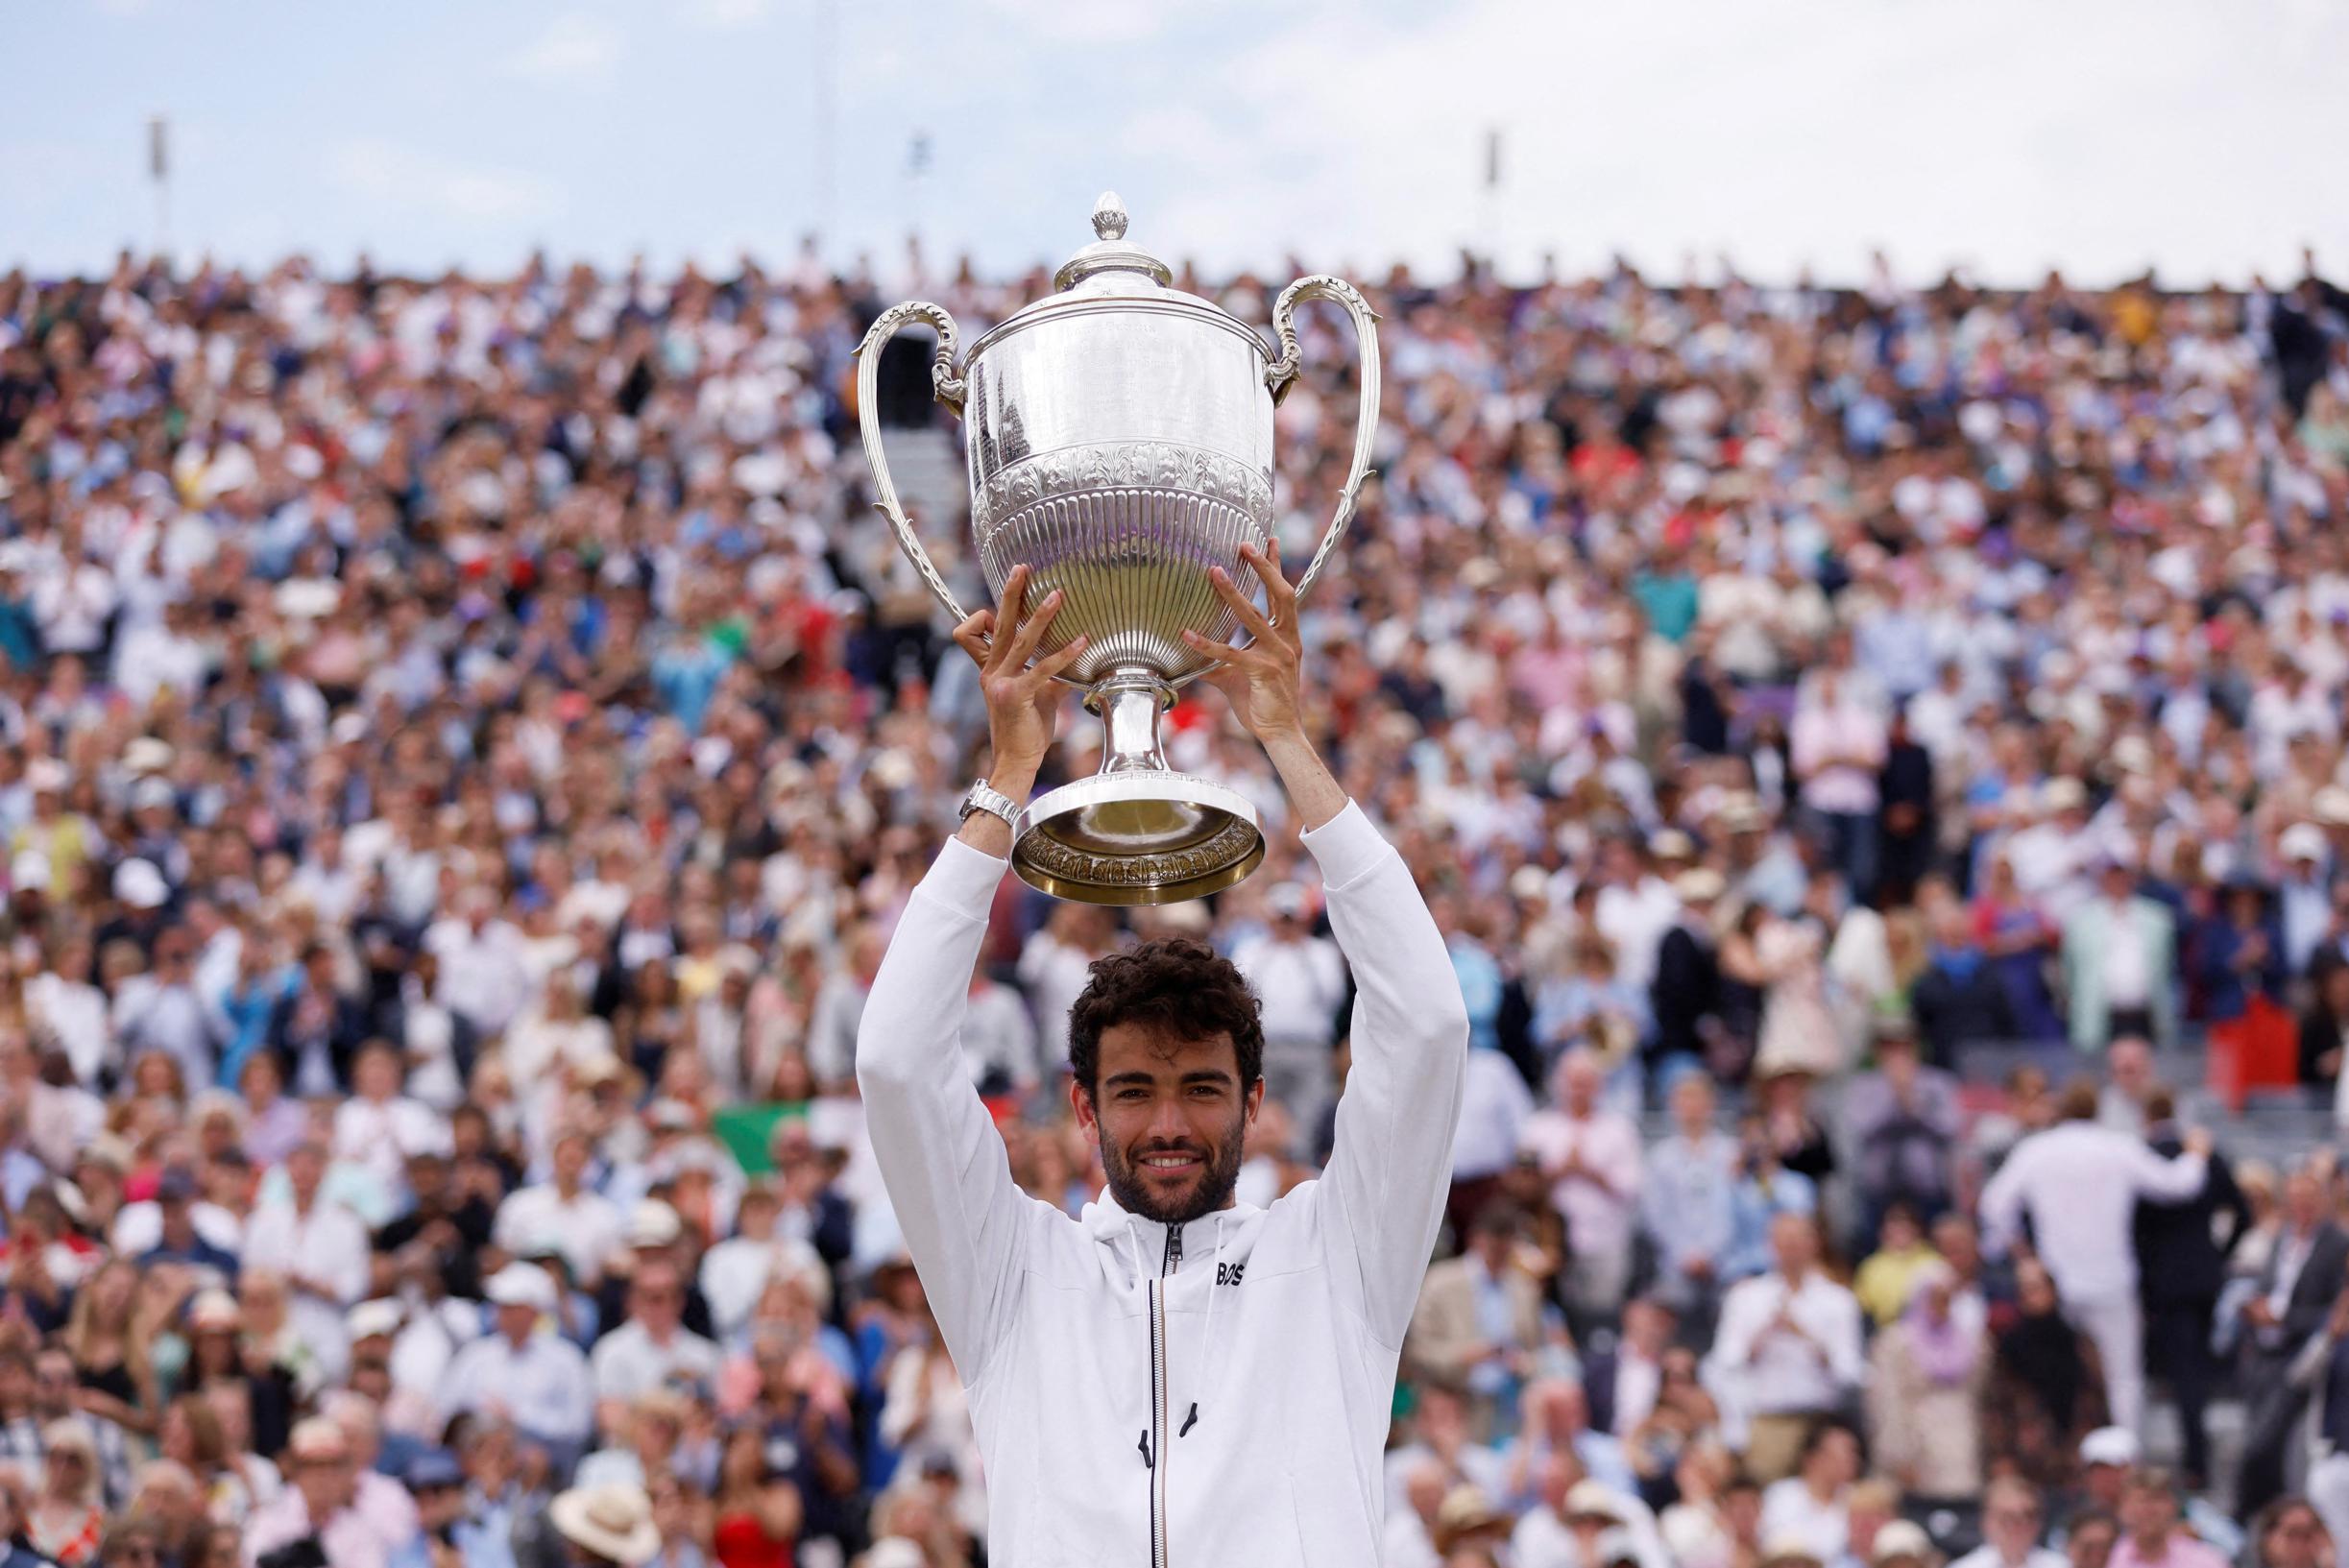 Italiaan Matteo Berrettini bewijst zijn goede vorm voor Wimbledon en verlengt titel op Londense gras van Queen’s